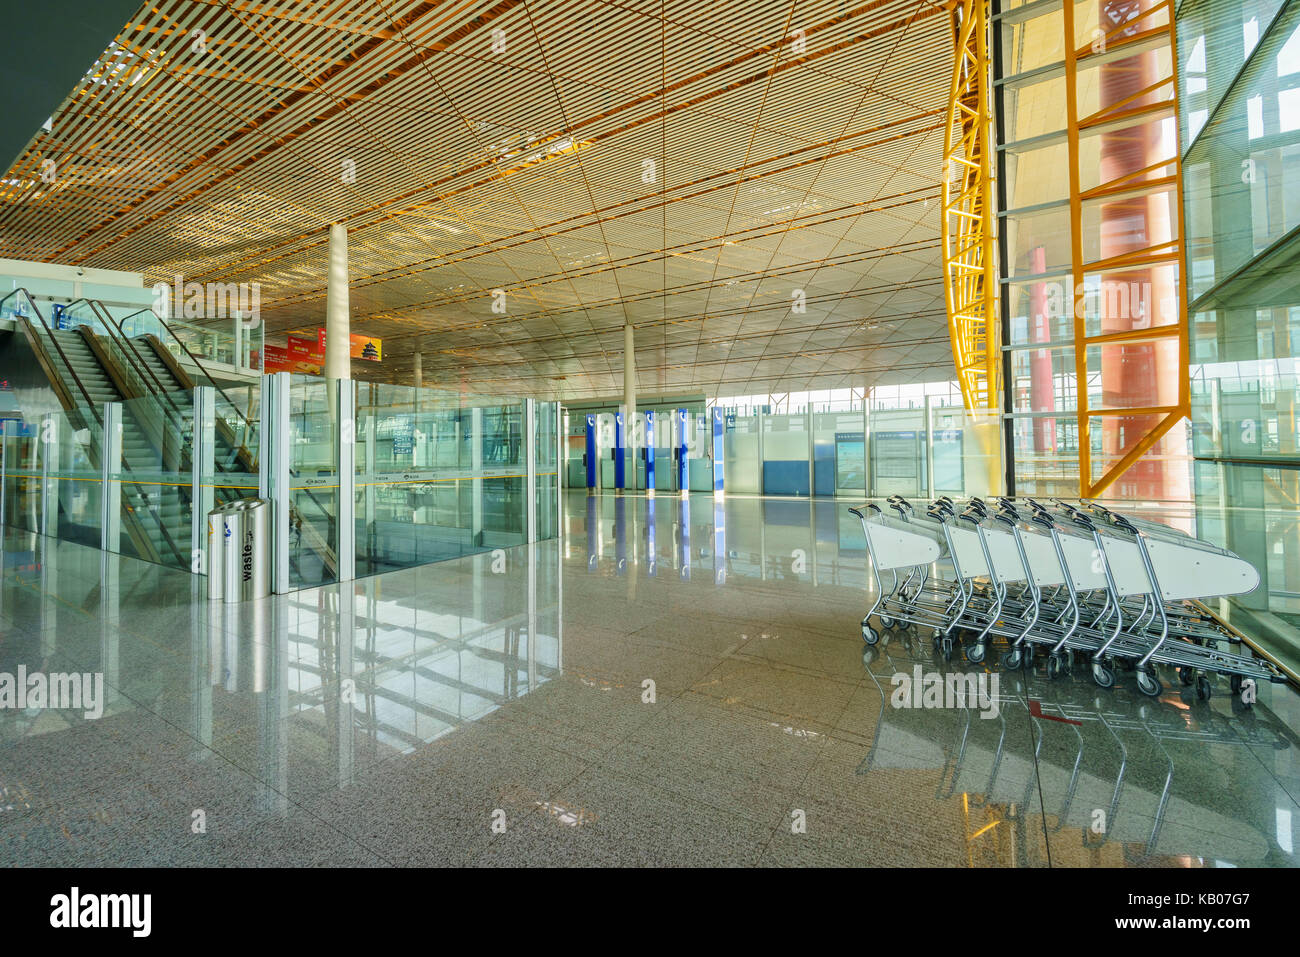 Beijing, JAN 3: Interior view of the Beijing International Airport at Beijing, China Stock Photo